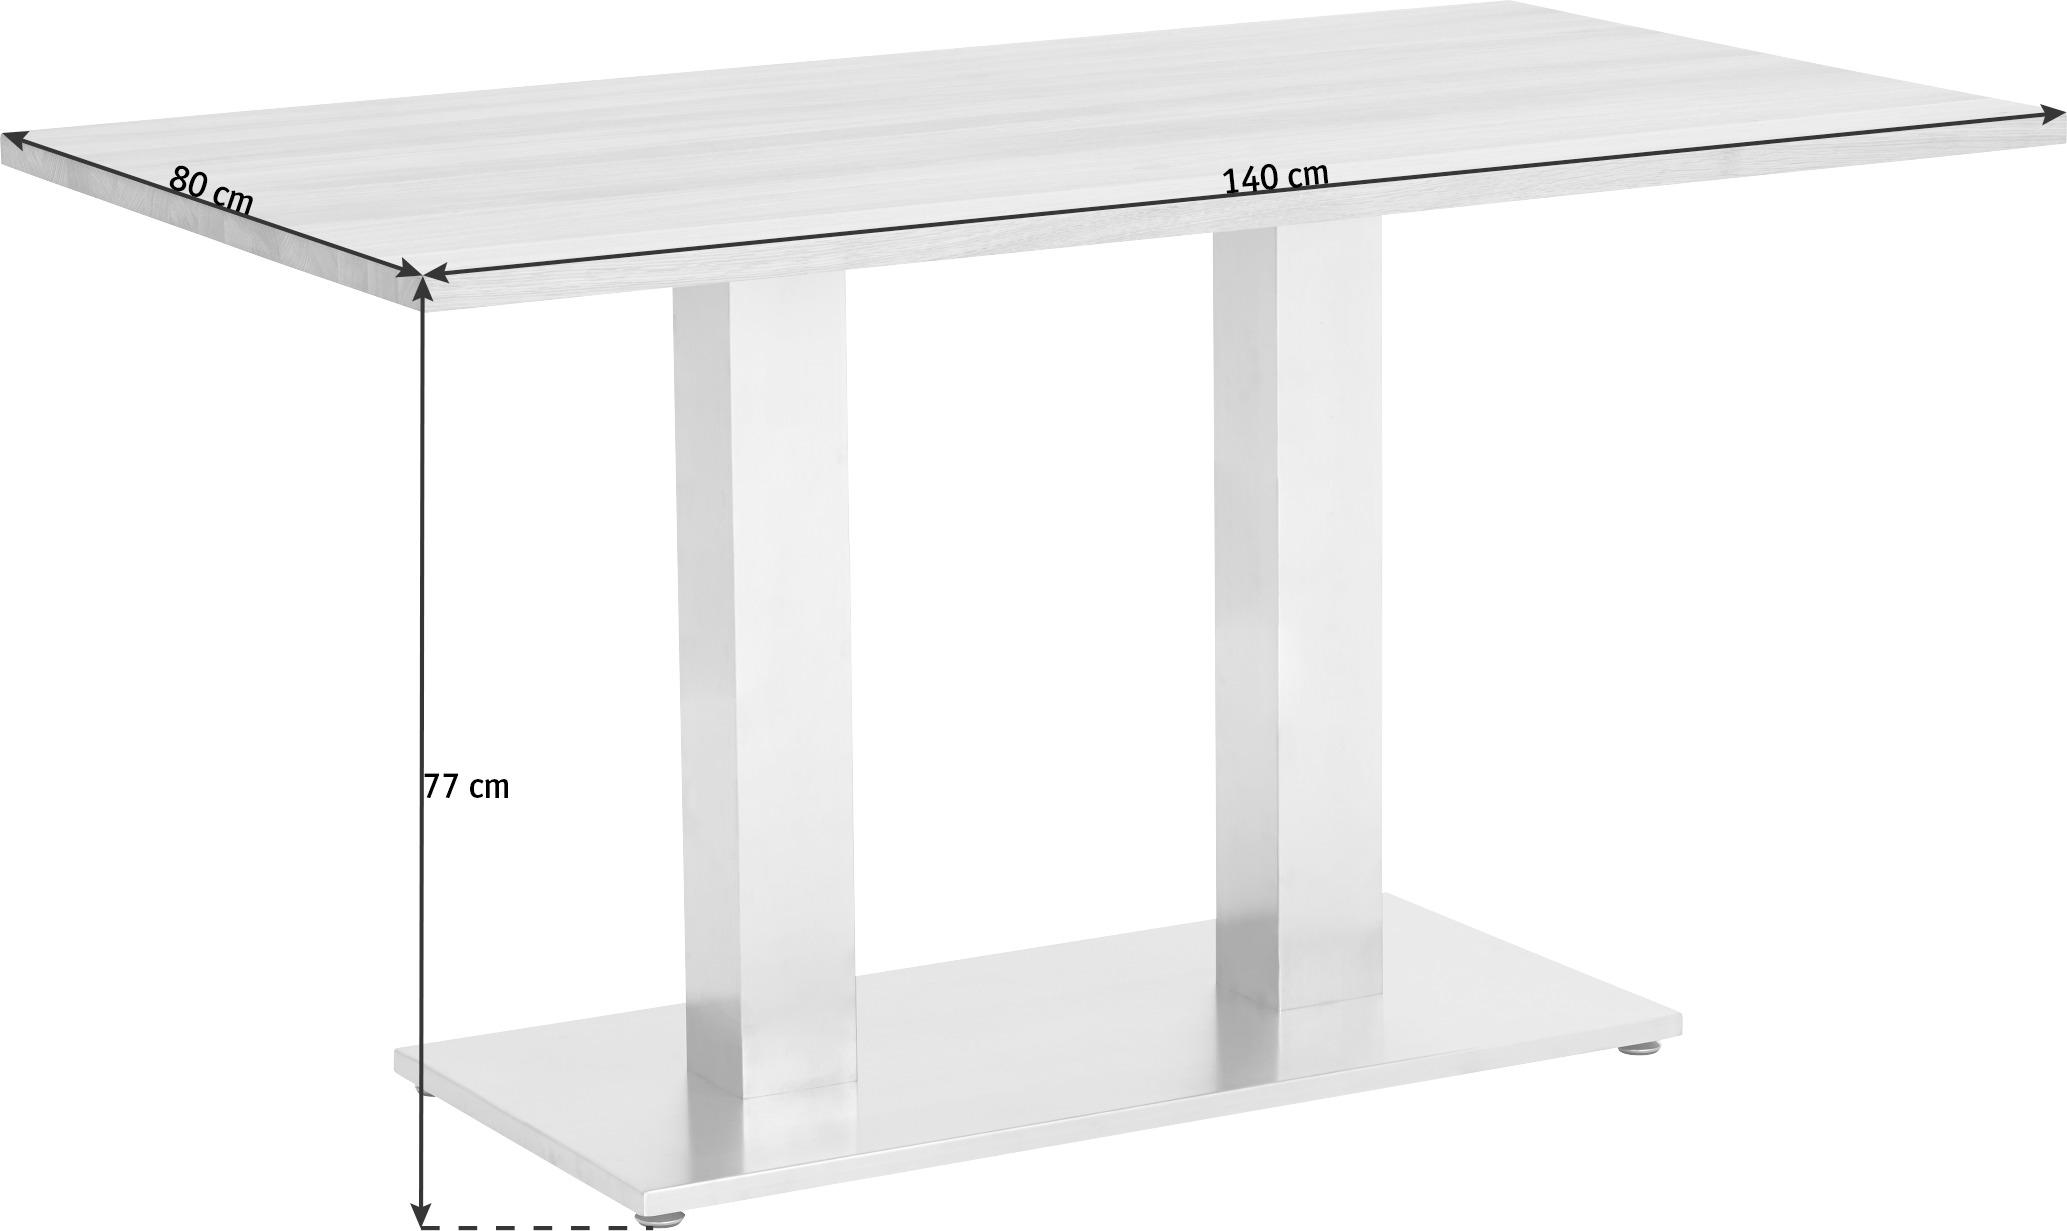 ESSTISCH 140/80/77 cm Metall, Glas Weiß, Edelstahlfarben rechteckig  - Edelstahlfarben/Weiß, Design, Glas/Metall (140/80/77cm) - Dieter Knoll